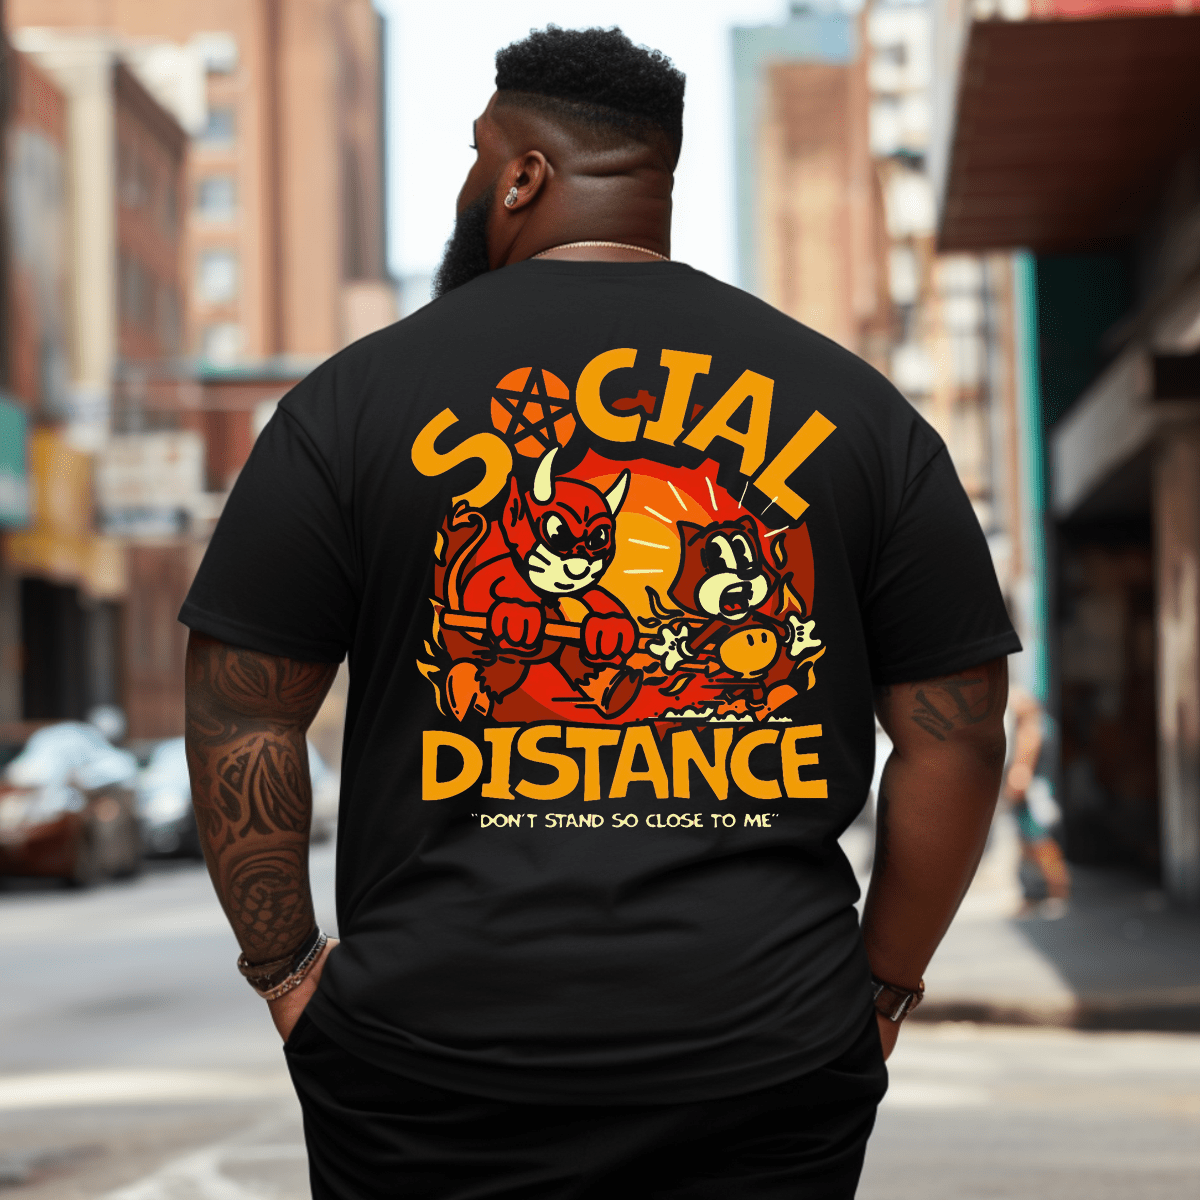 Keep Social Distance Plus Size Men T-Shirt